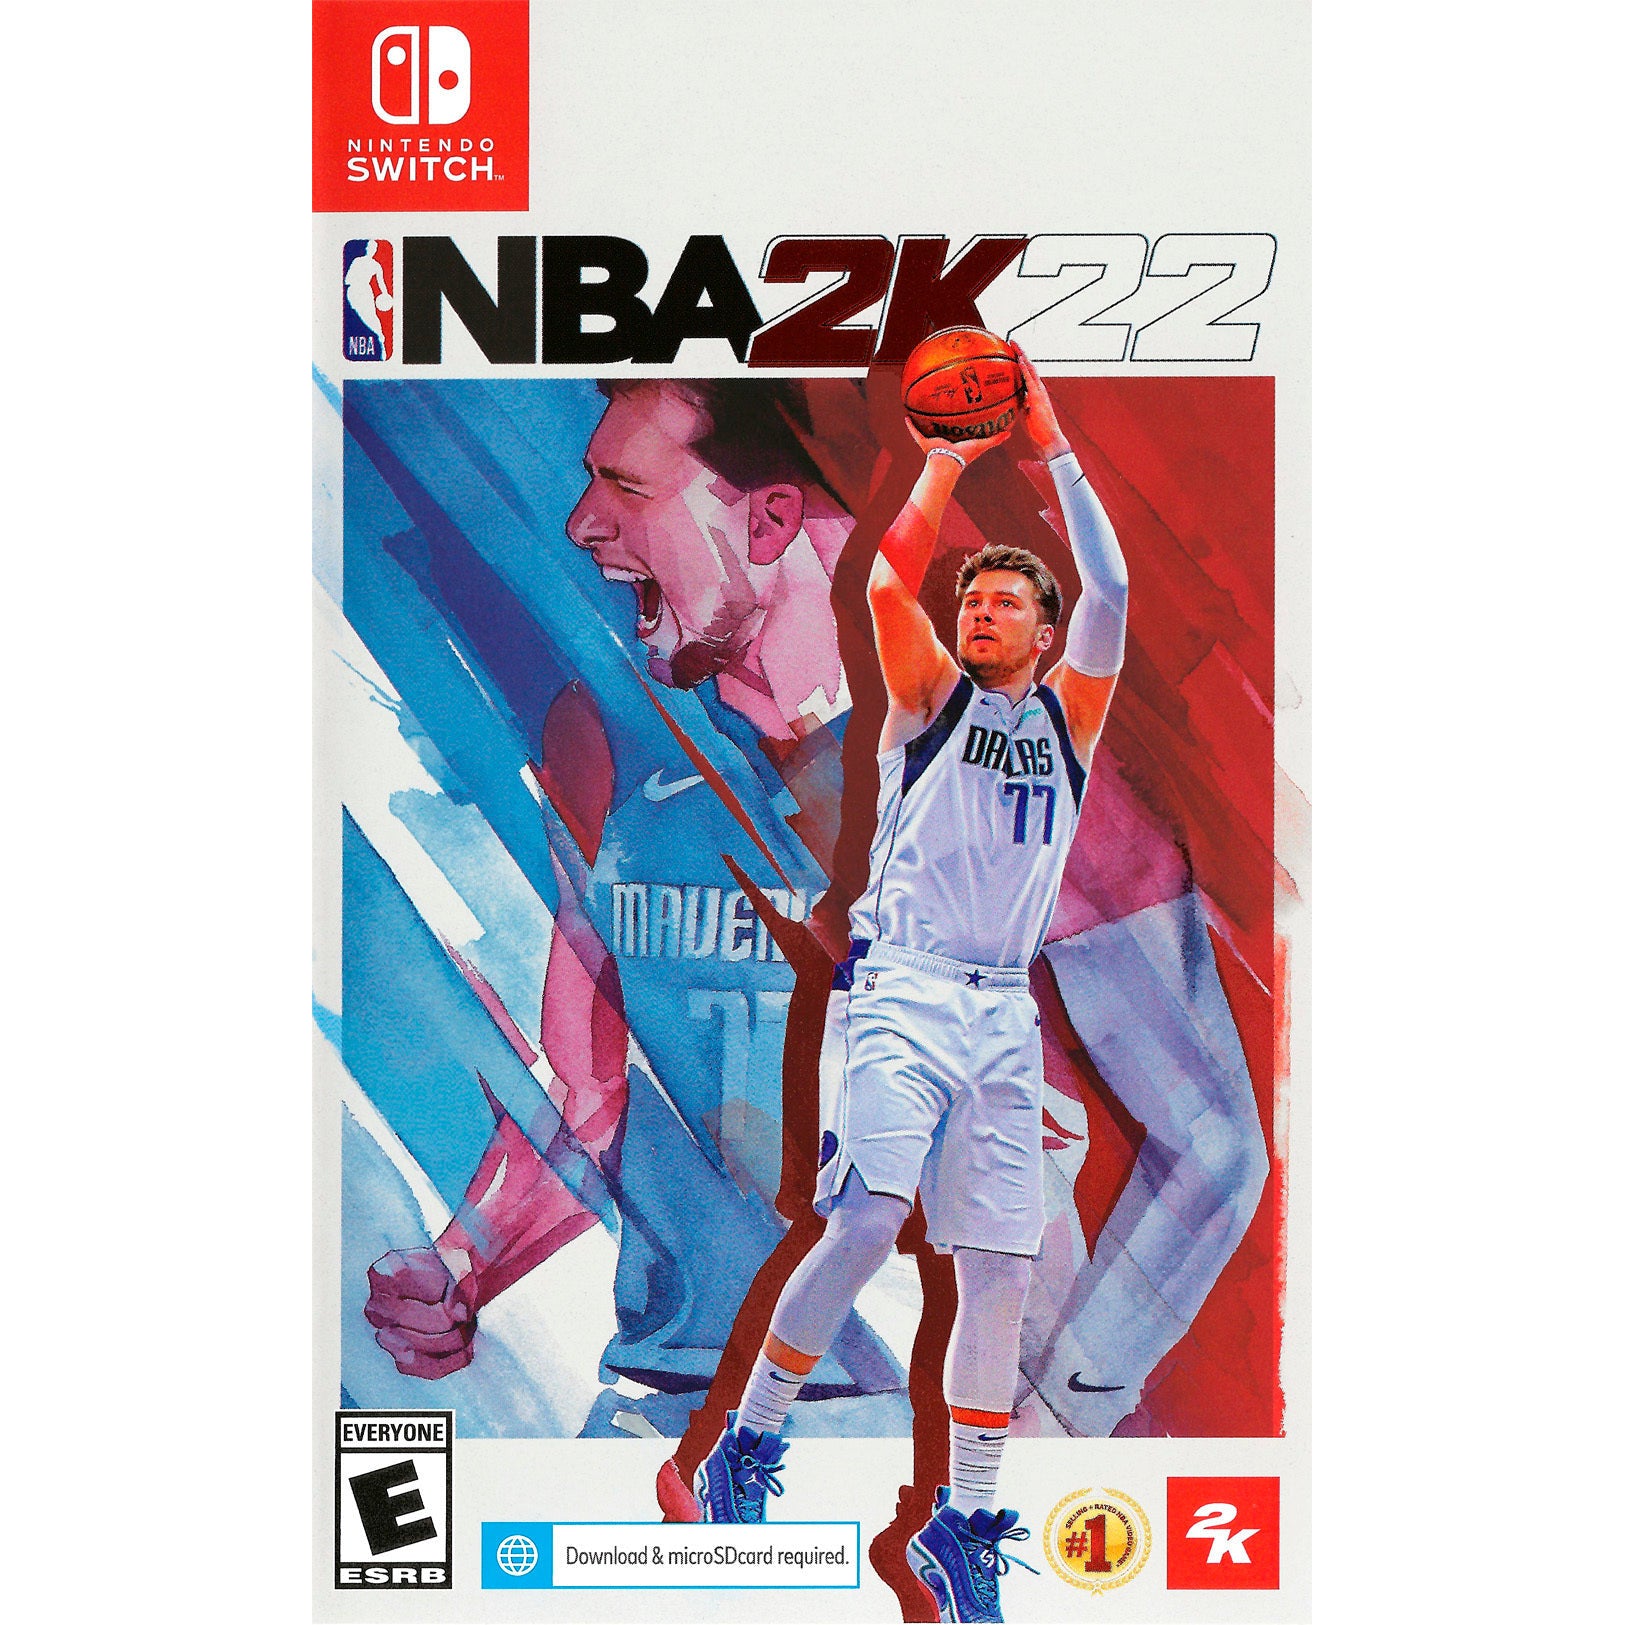 Switch - NBA 2K22 (In Case)